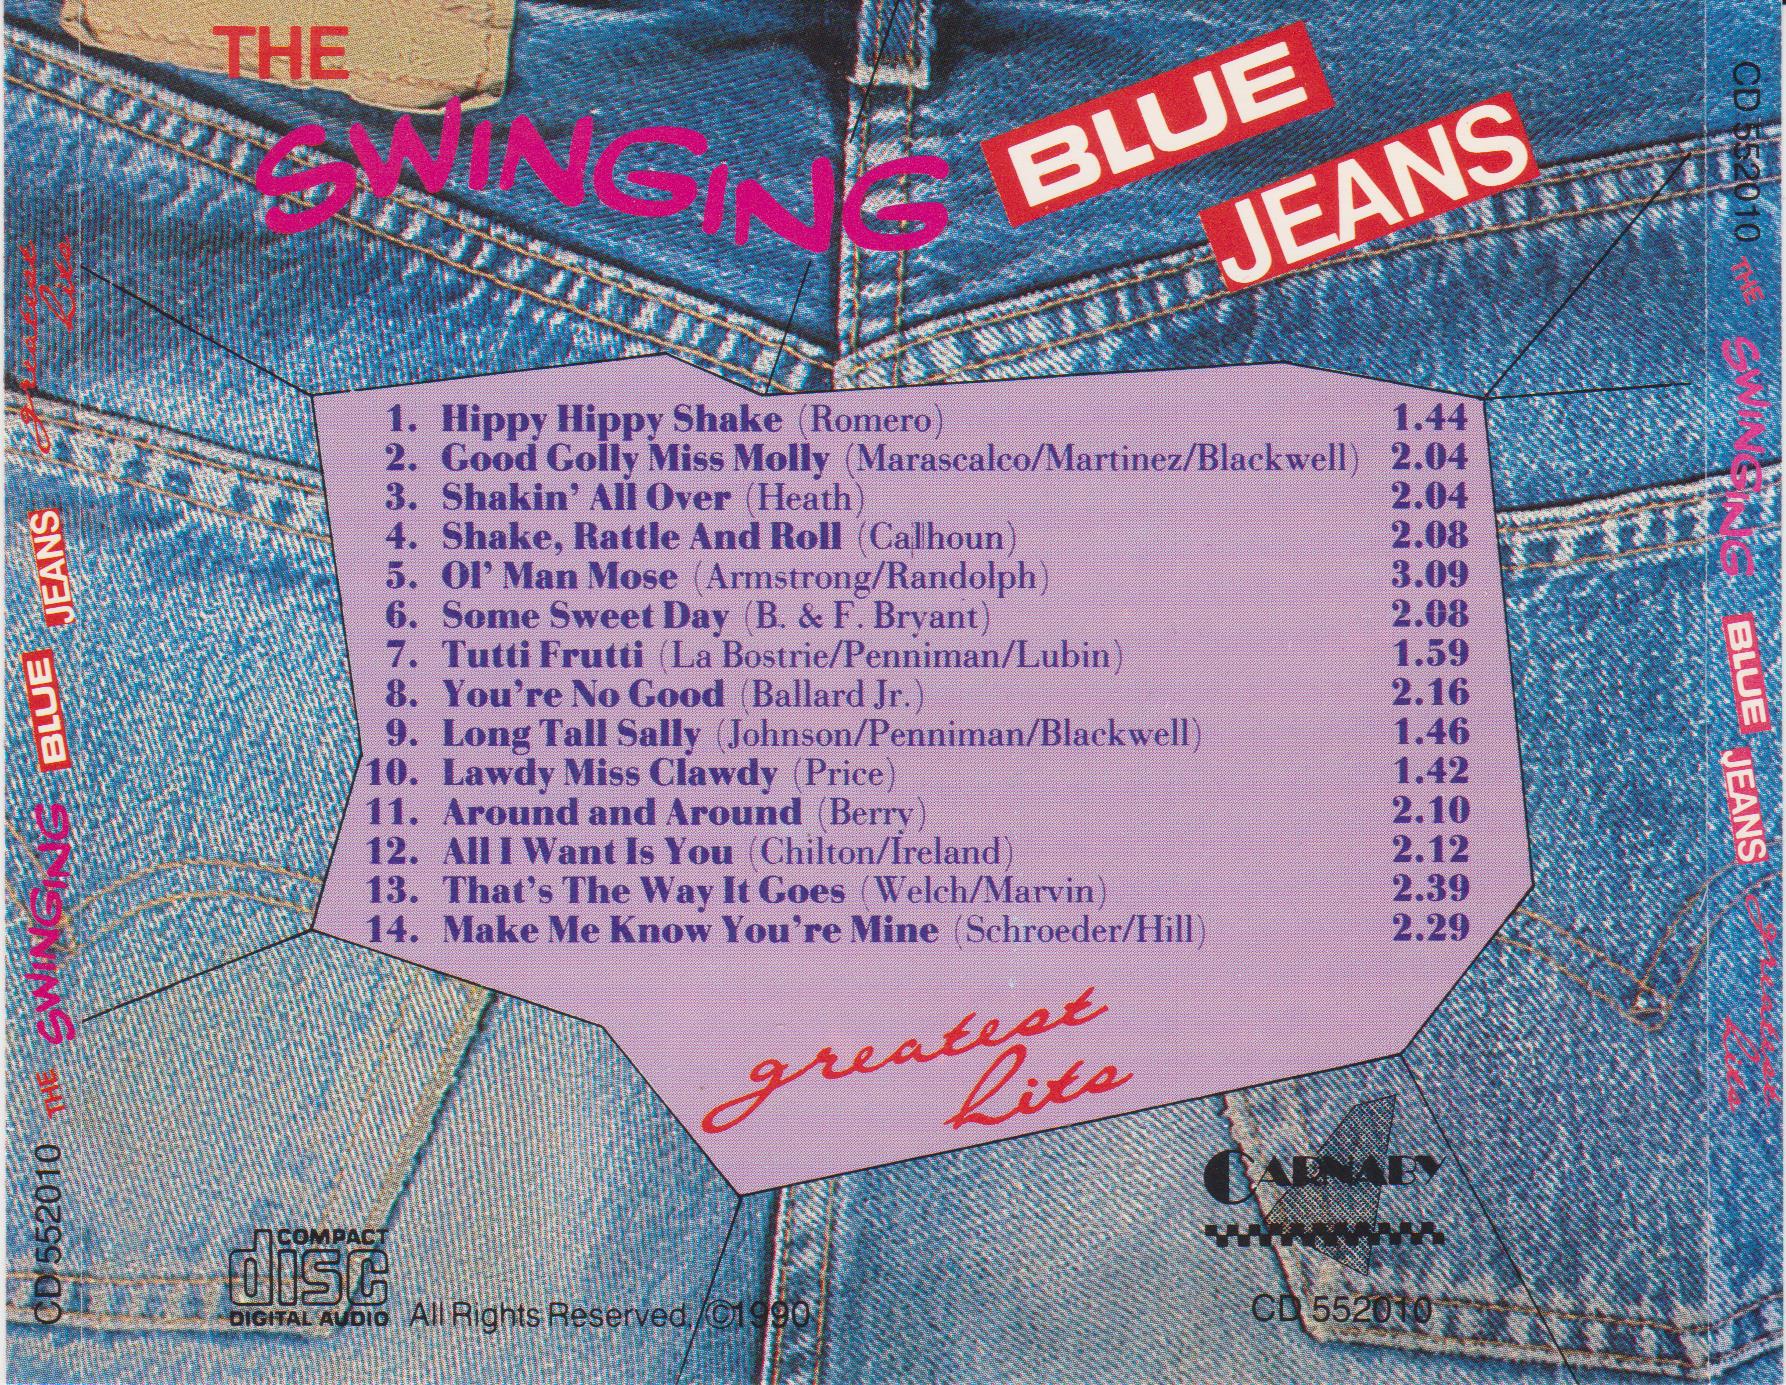 New jeans lyrics. Альбом Нью джинс. Альбом Нью джинсы. New Jeans обложка альбома. Название альбомов Нью джинс.